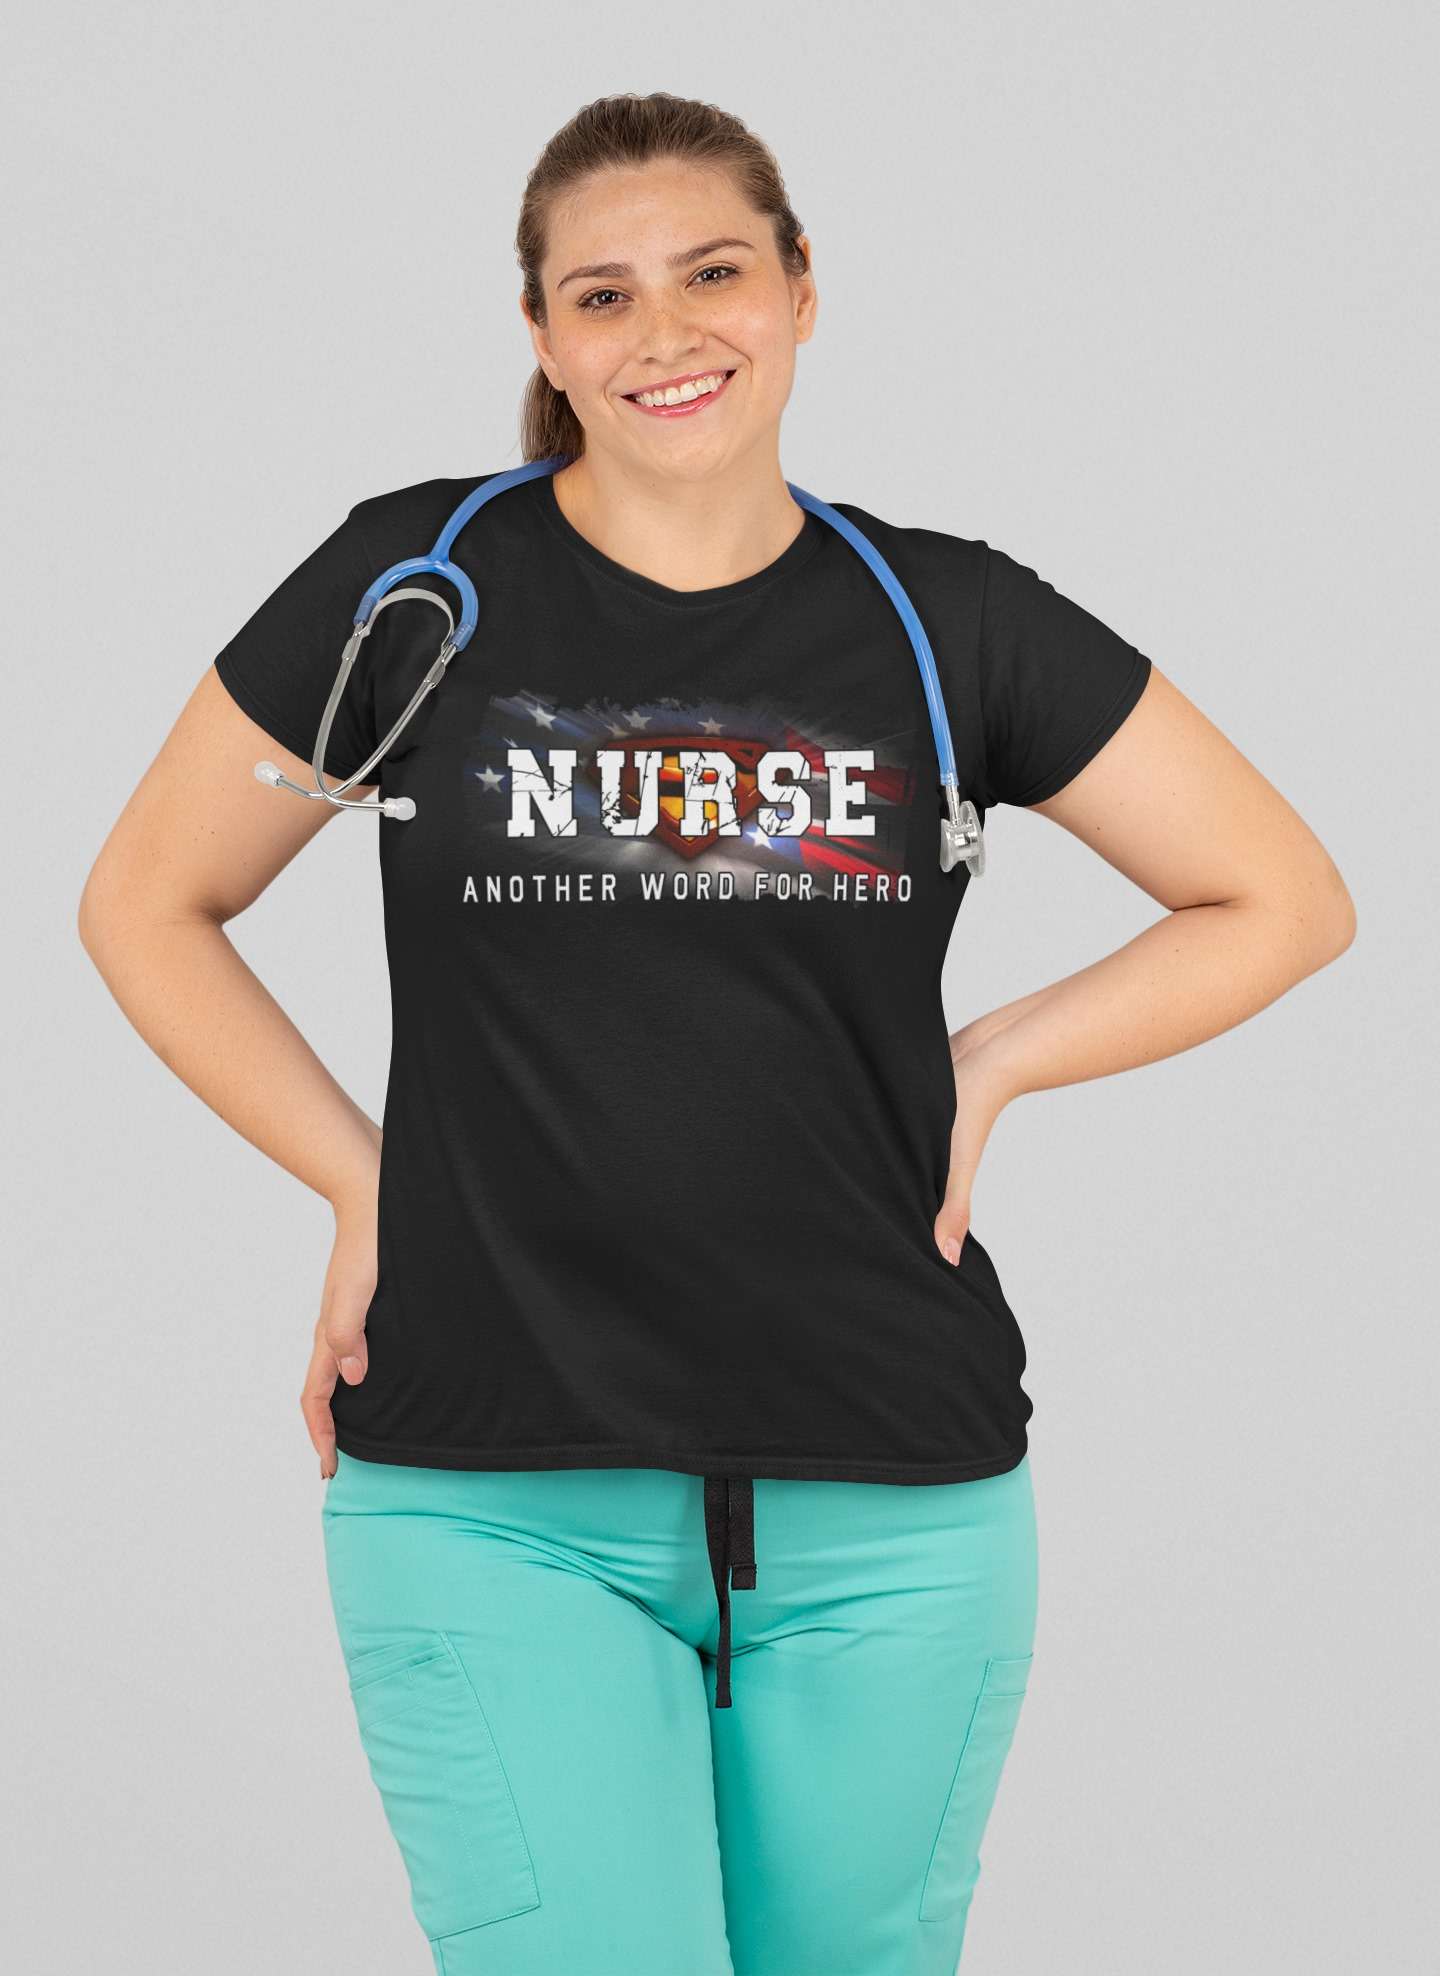 Nurse another word for hero - Nurse the hero, Nursing the job